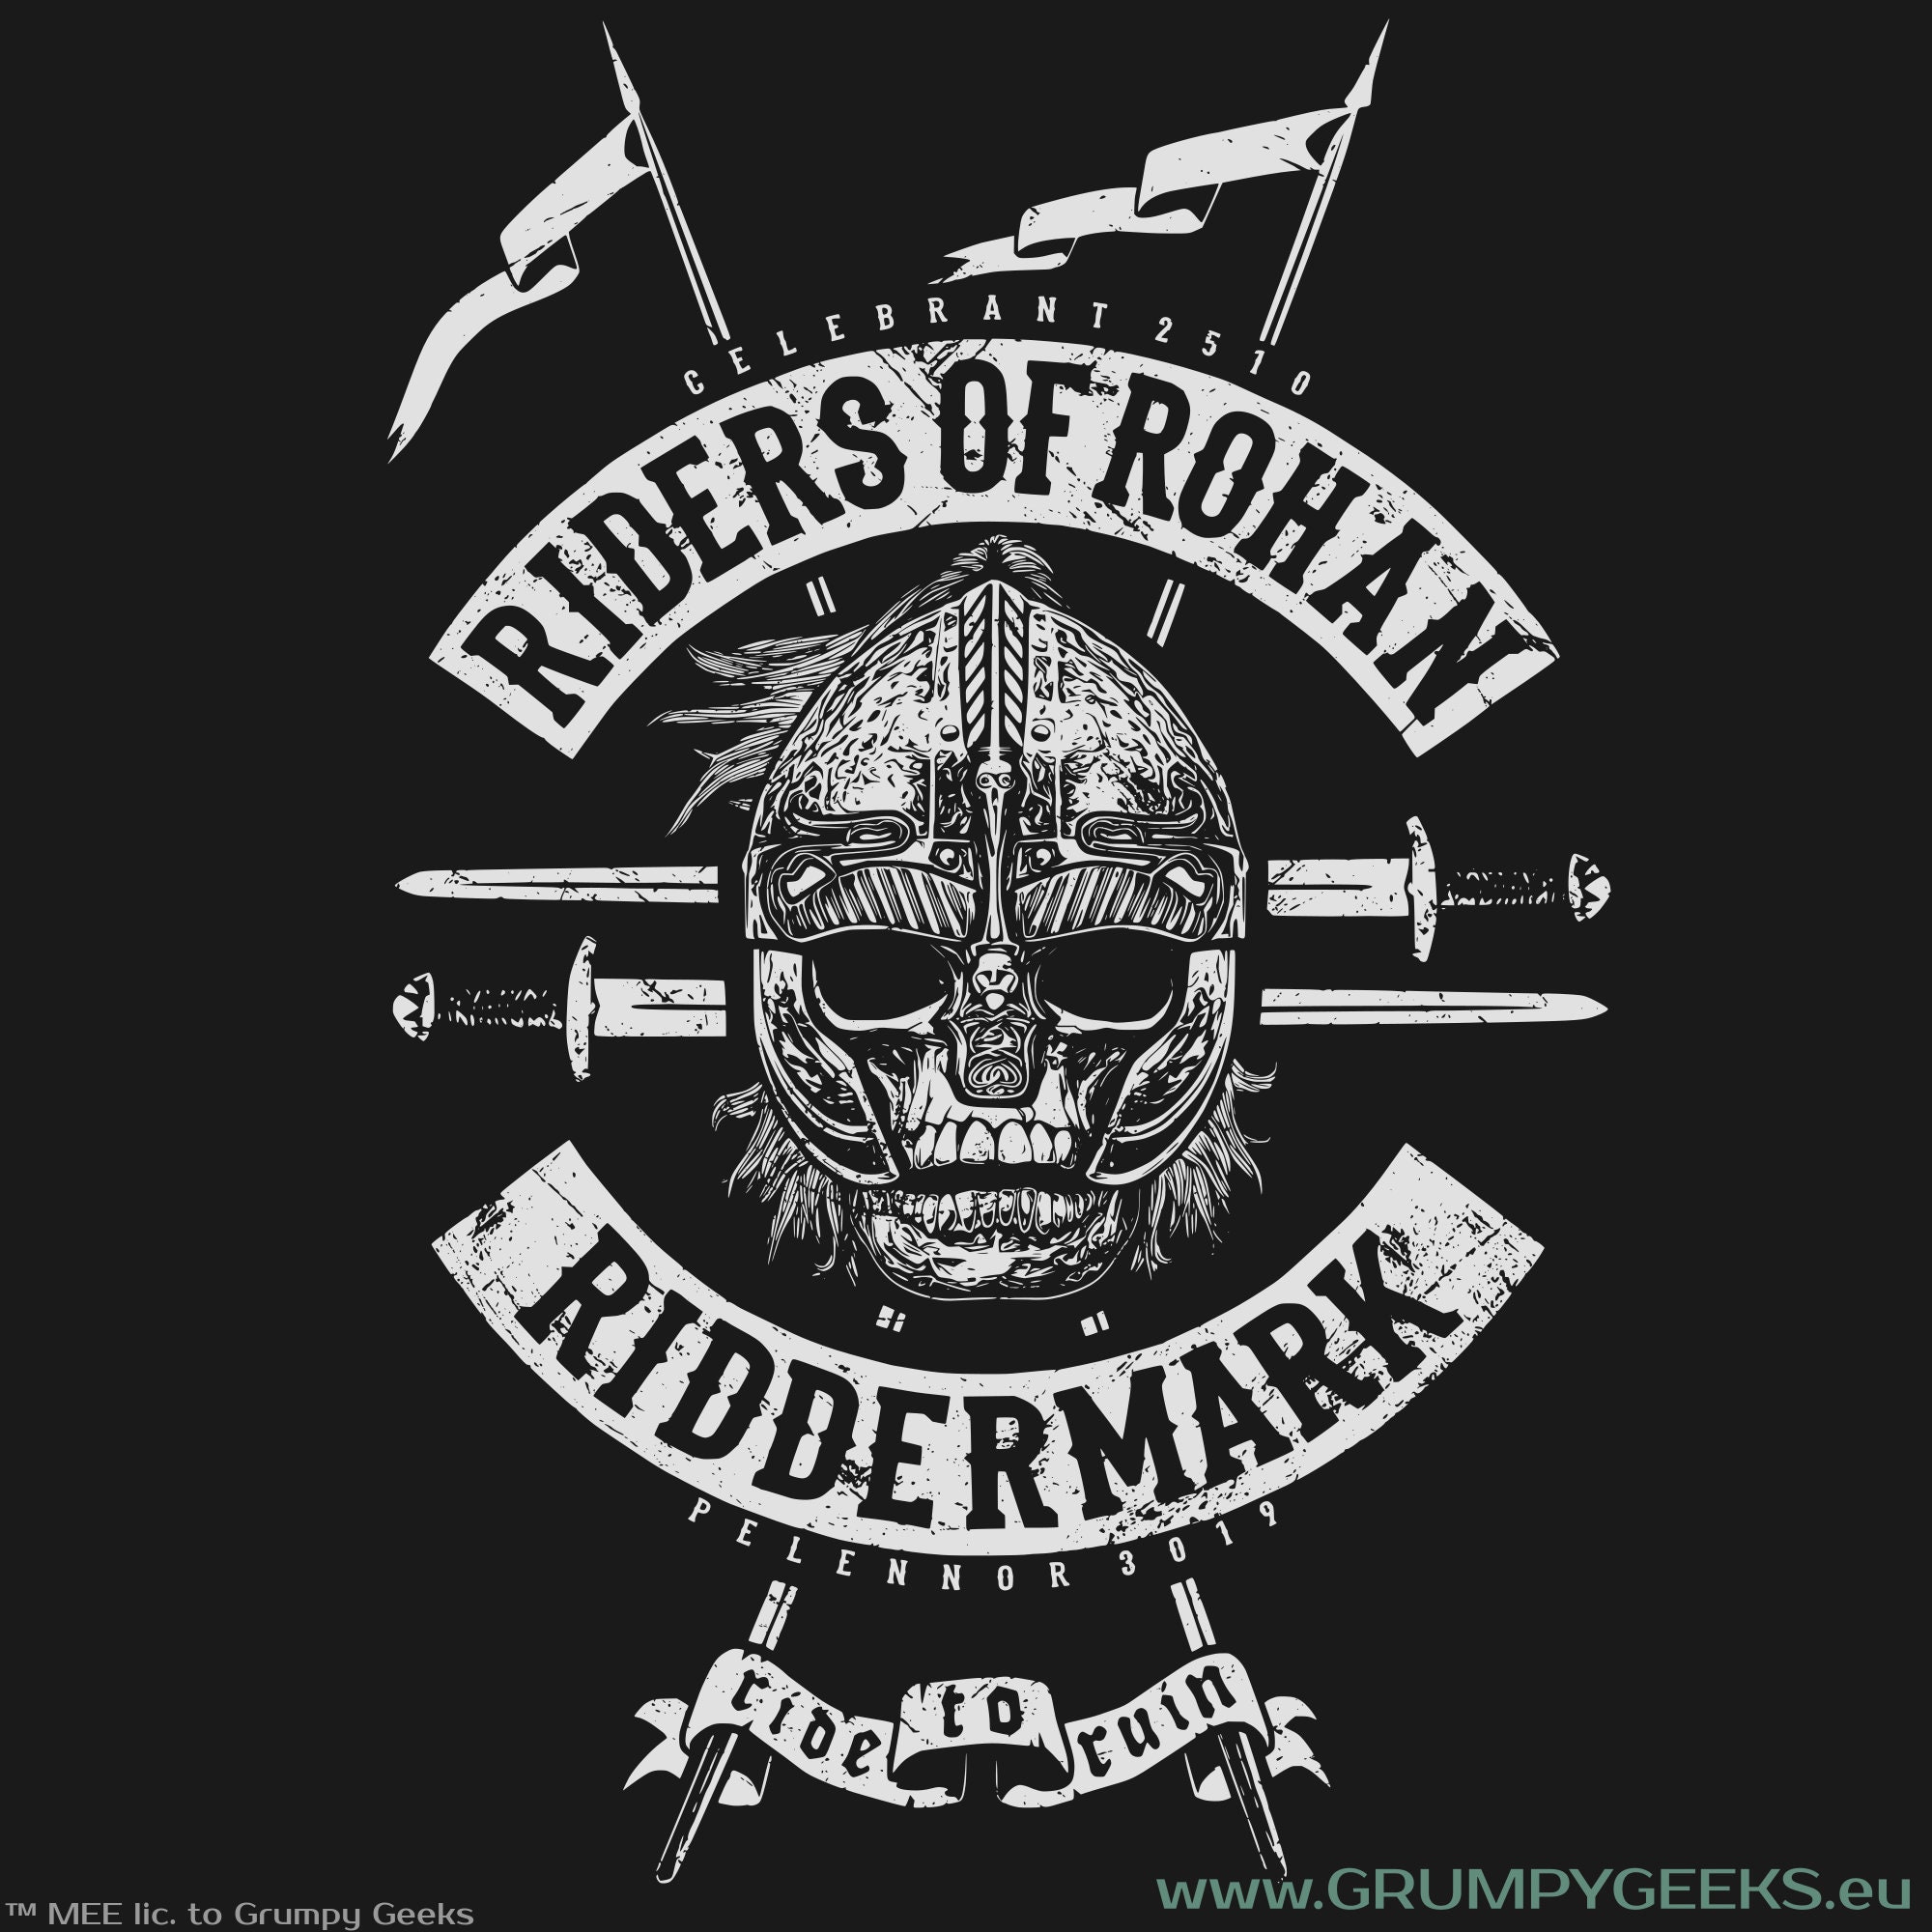 Shieldmaiden's of Rohan get Hot defending the Riddermark : r/LOTRbaddies